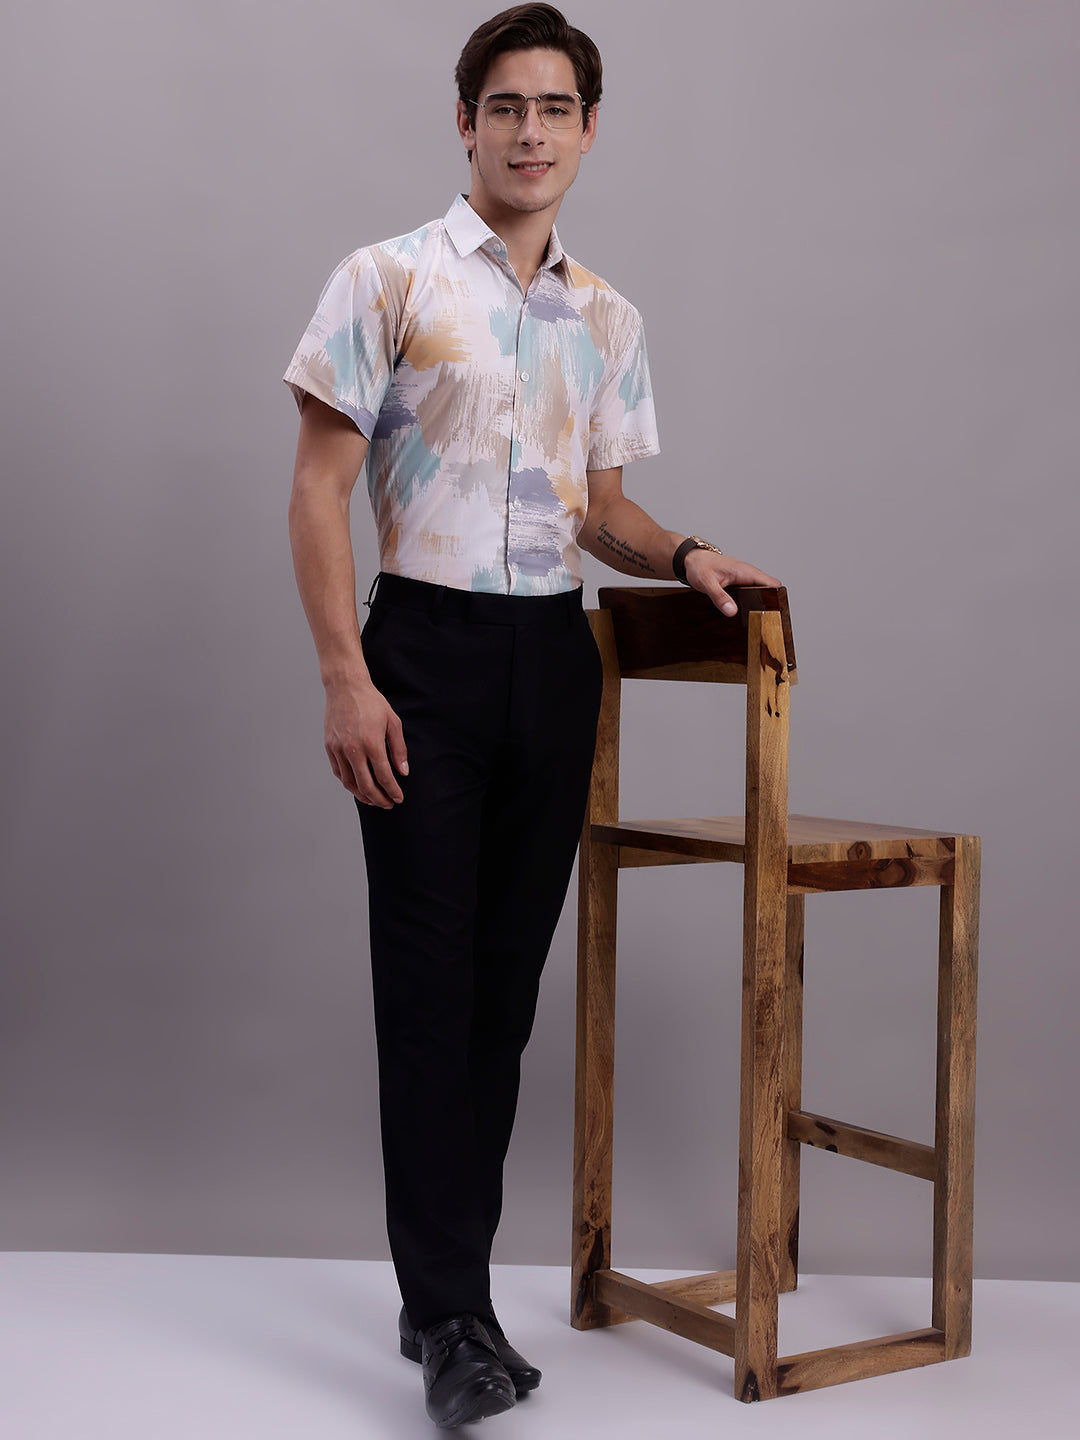 Men's Printed Formal Shirt ( SF 885 Multi )